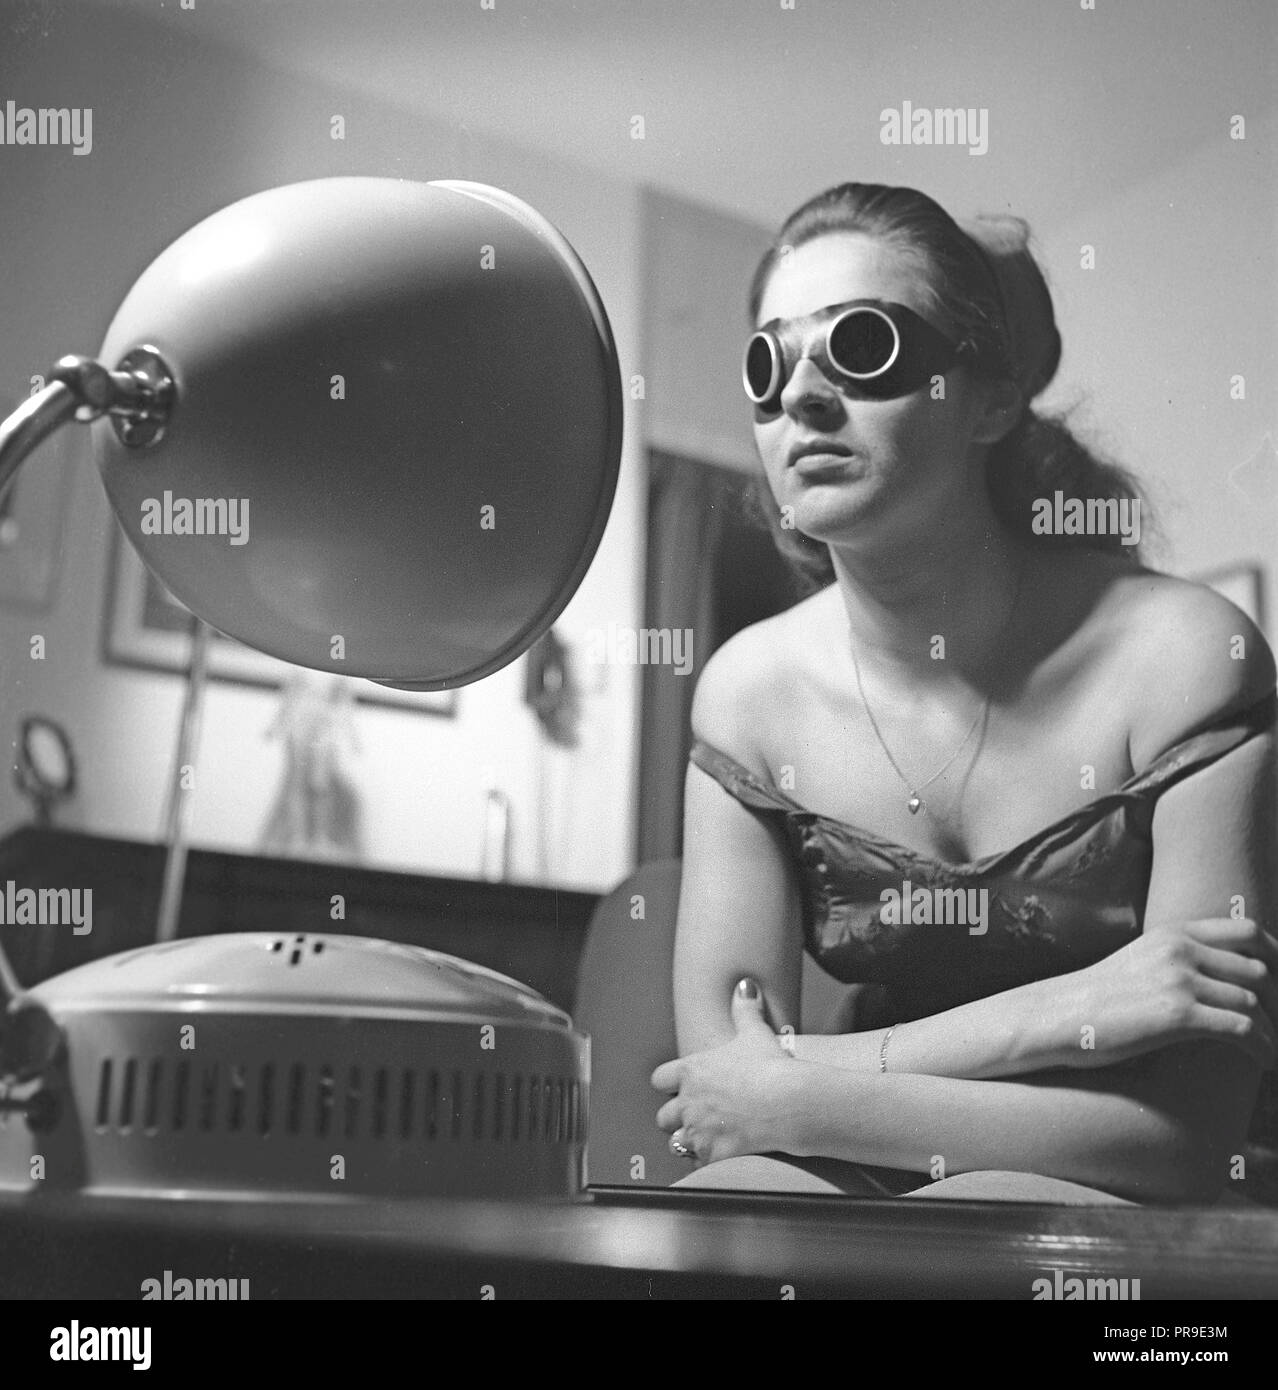 Bellezza negli anni '1940s. Una giovane donna sta prendendo un'abbronzatura davanti ad una lampada solare. La luce artificiale del sole dalle apparecchiature di abbronzatura domestiche come questa lampada da sole ha dato un'abbronzatura ed era a volte un trattamento per le malattie. Durante l'uso, è necessario indossare occhiali da sole protettivi. Svezia 1947. Foto Kristoffersson Y81-3 Foto Stock